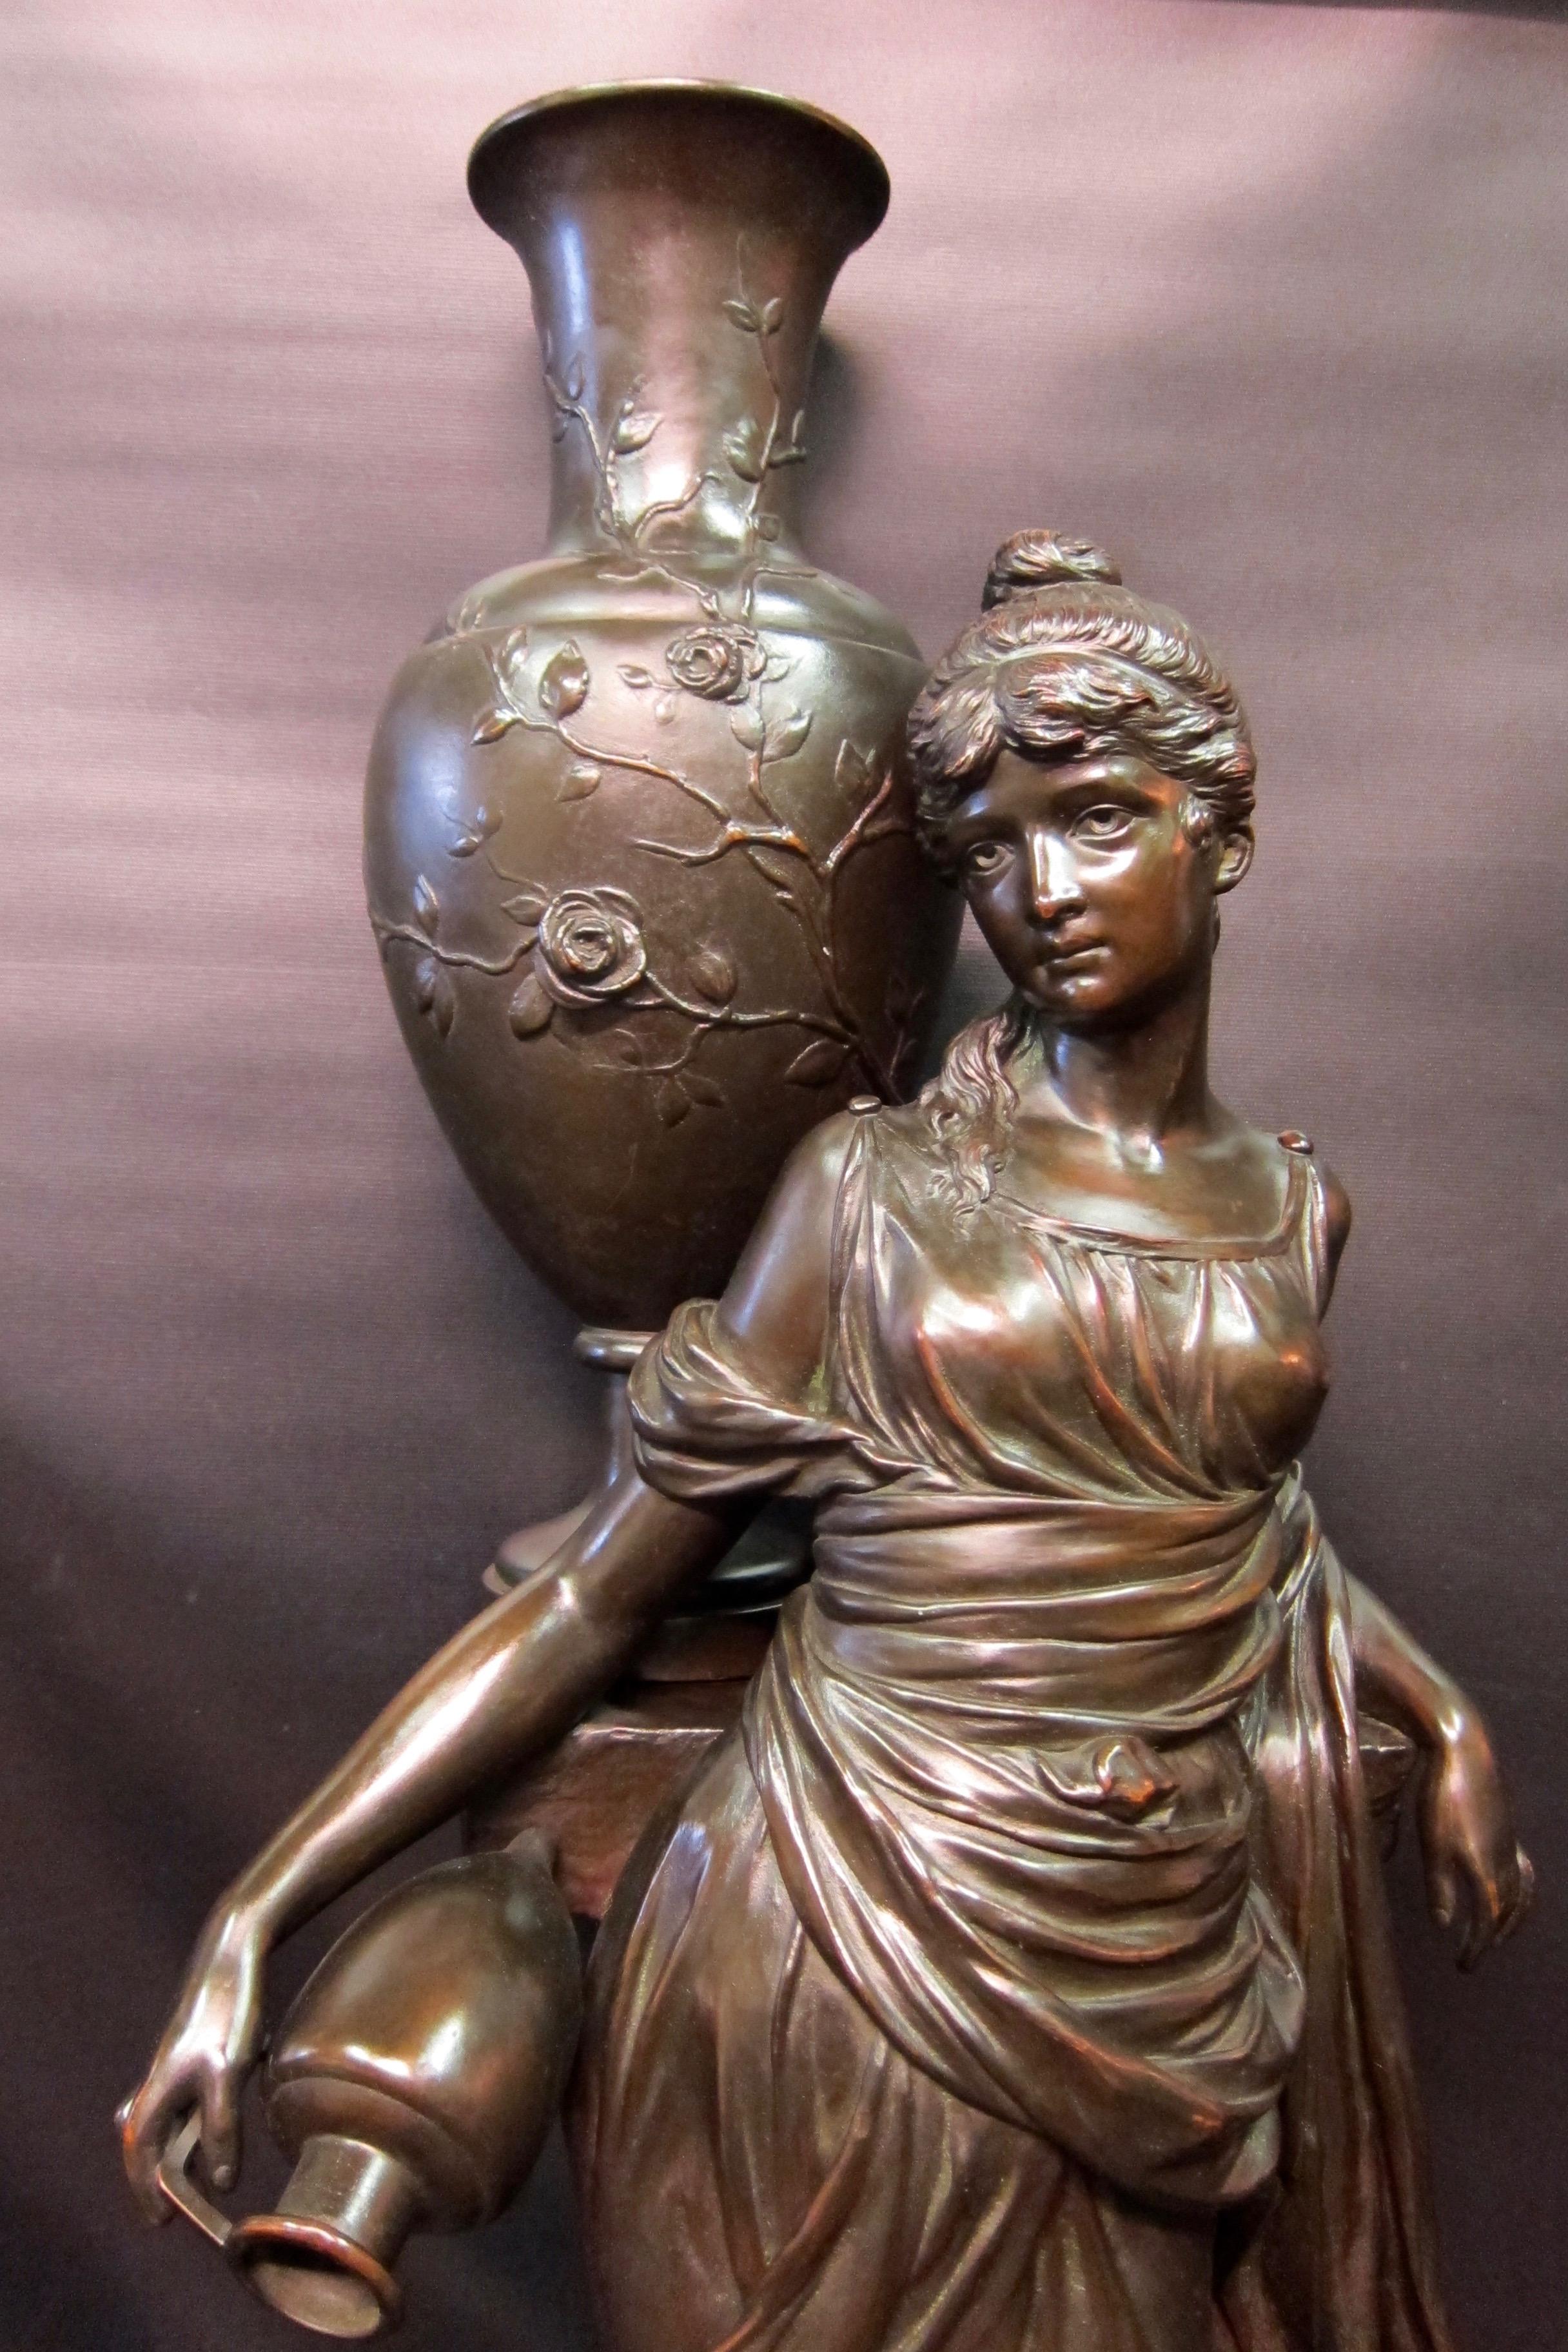 Diese übergroße und seltene patinierte Kupferskulptur aus dem 19. Jahrhundert ist mit einem wunderschön gestalteten griechischen Mädchen gestaltet. Das in ein wallendes Gewand gekleidete Mädchen steht vor einem Stein, auf dem eine große verzierte